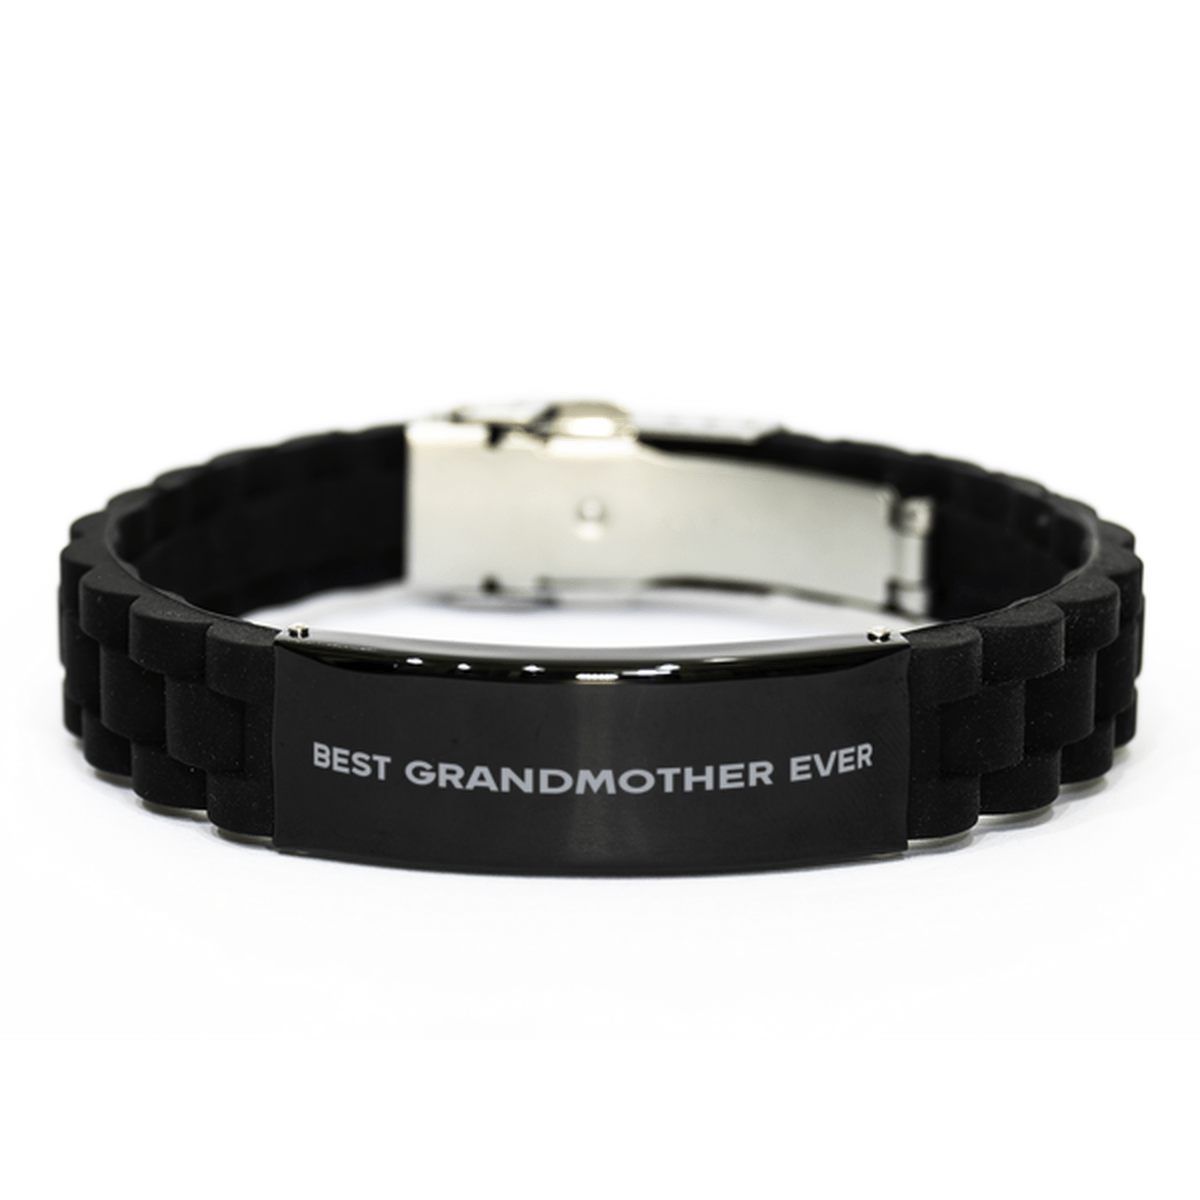 Unique Grandmother Bracelet, Best Grandmother Ever, Gift for Grandmother